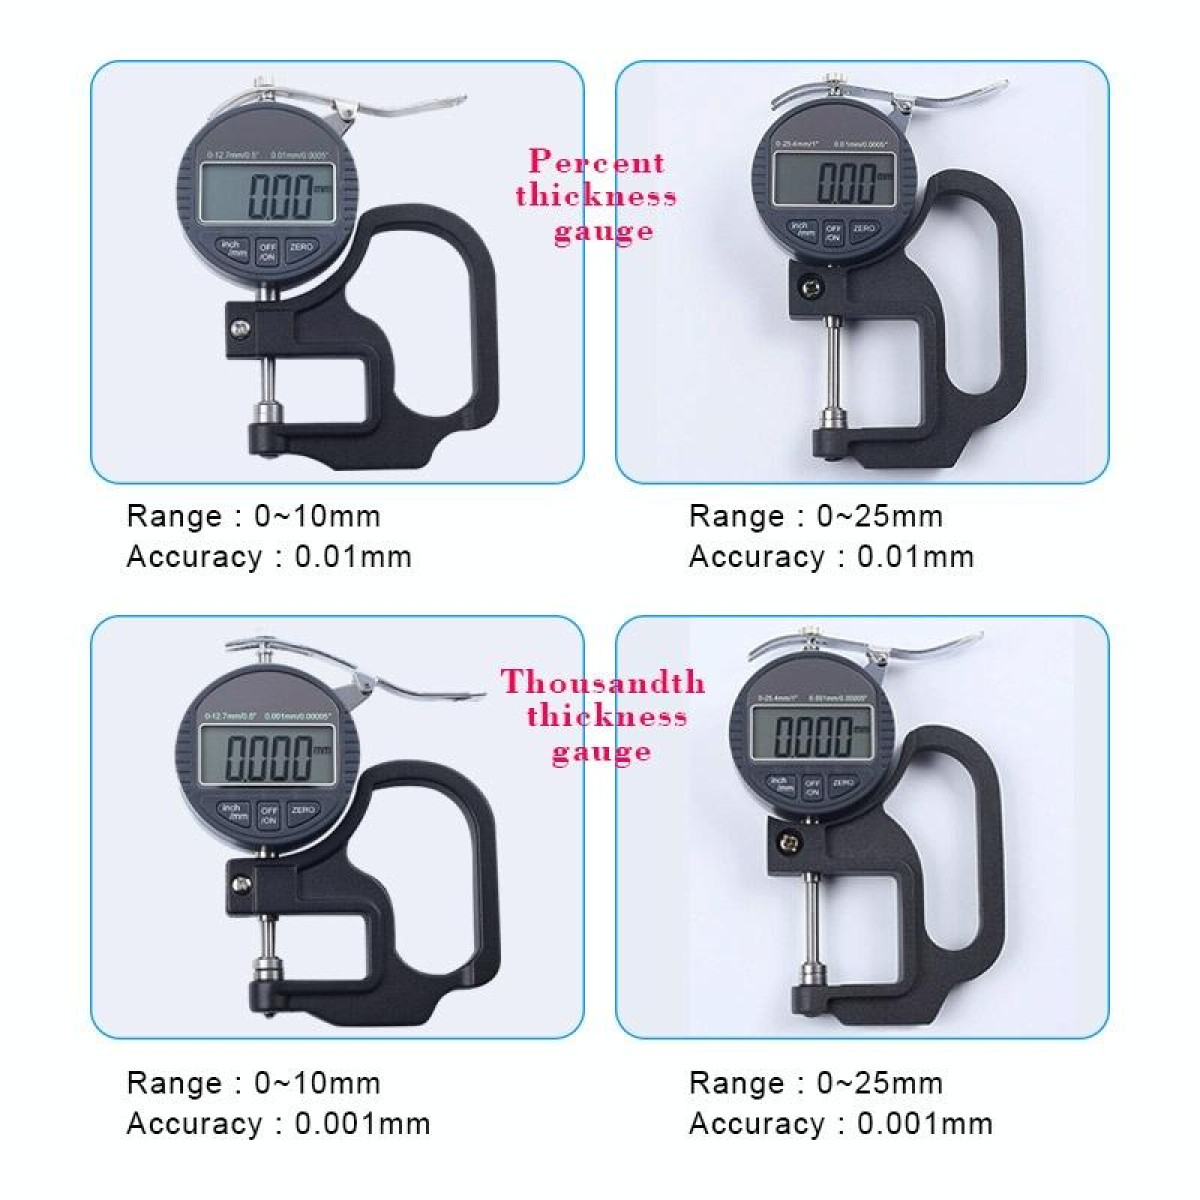 0-10mm Range Digital Display Micrometer Thickness Gauge